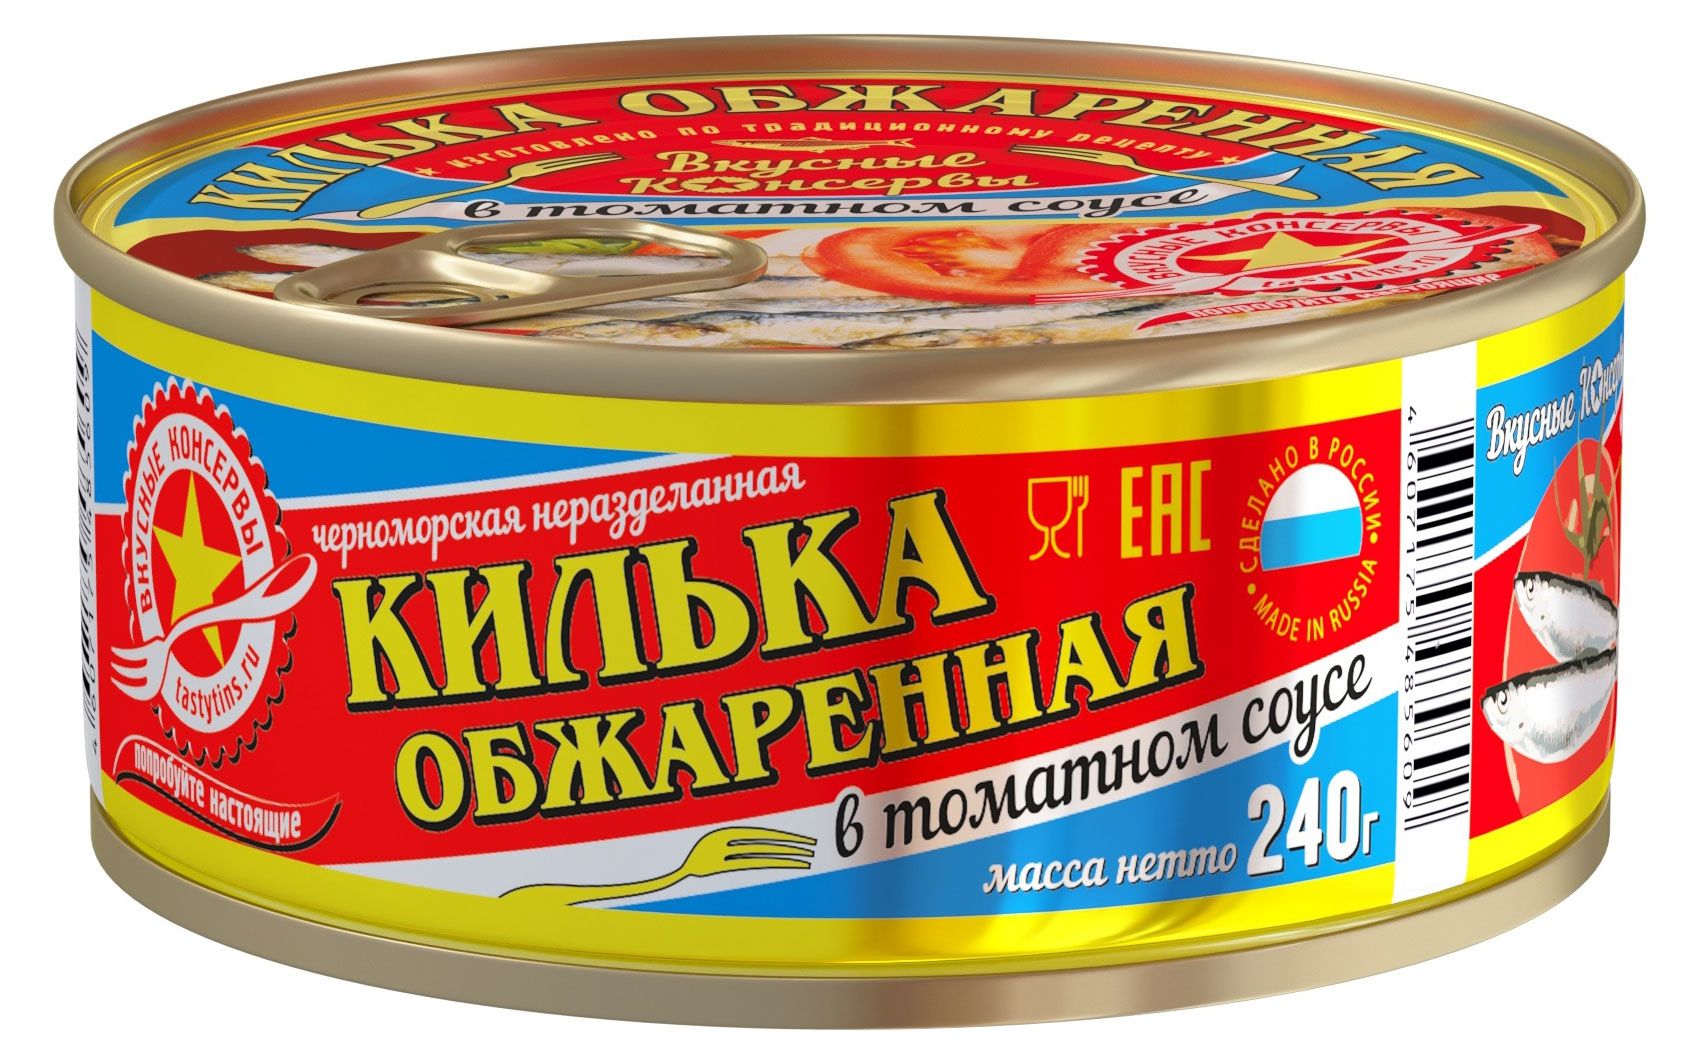 Вкусные консервы килька обжаренная в томатном соусе, 240 г